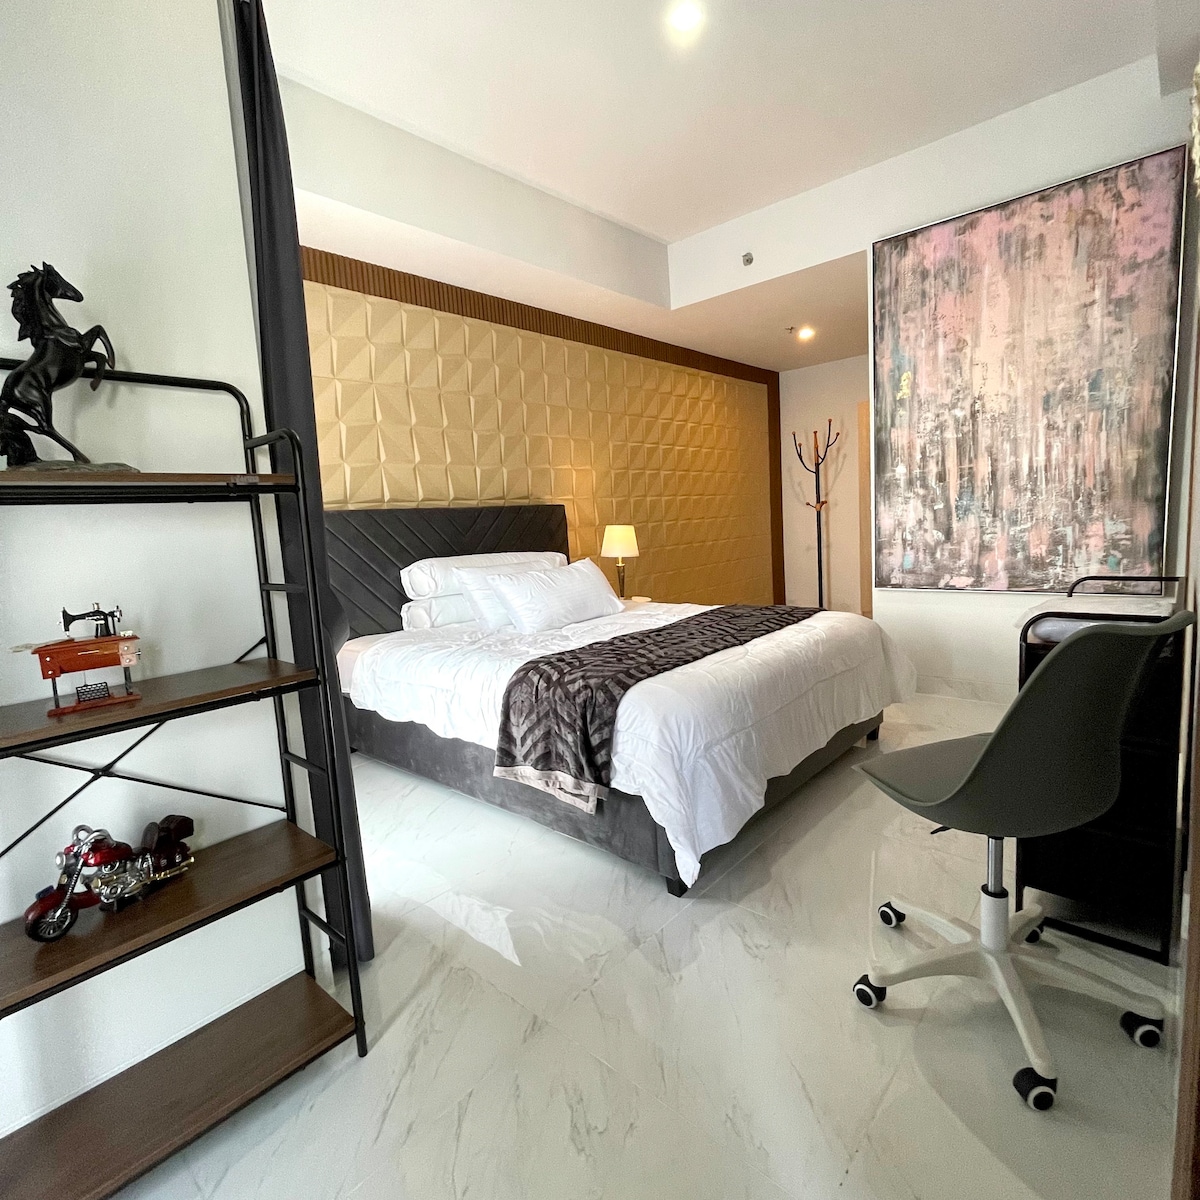 Delft apartement luxury 3bedroom